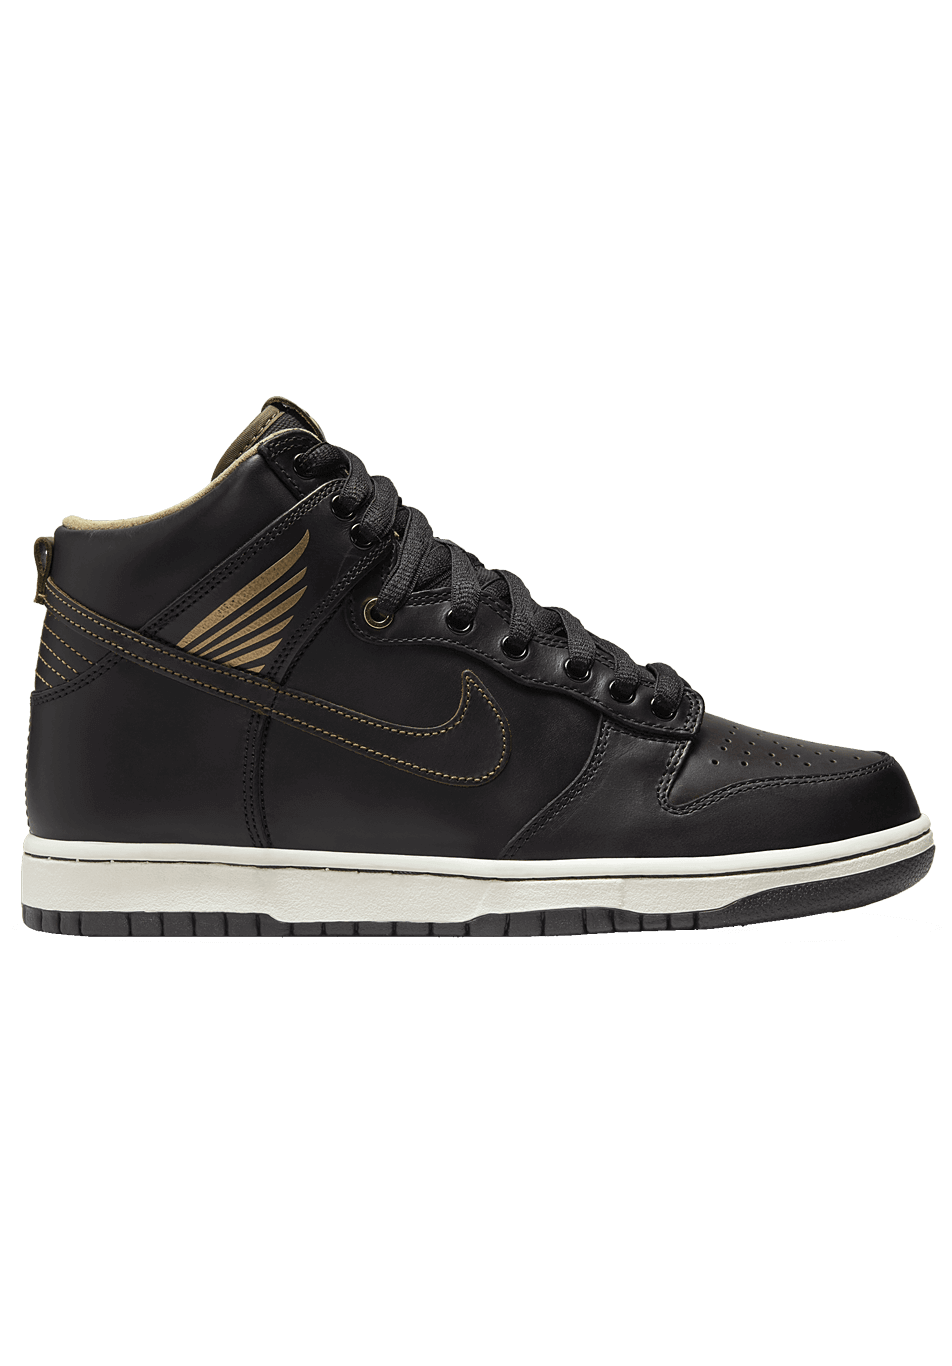 Nike SB Dunk High x Pawnshop Skate Co. OLDSOUL Black Gold ONLINE ONLY